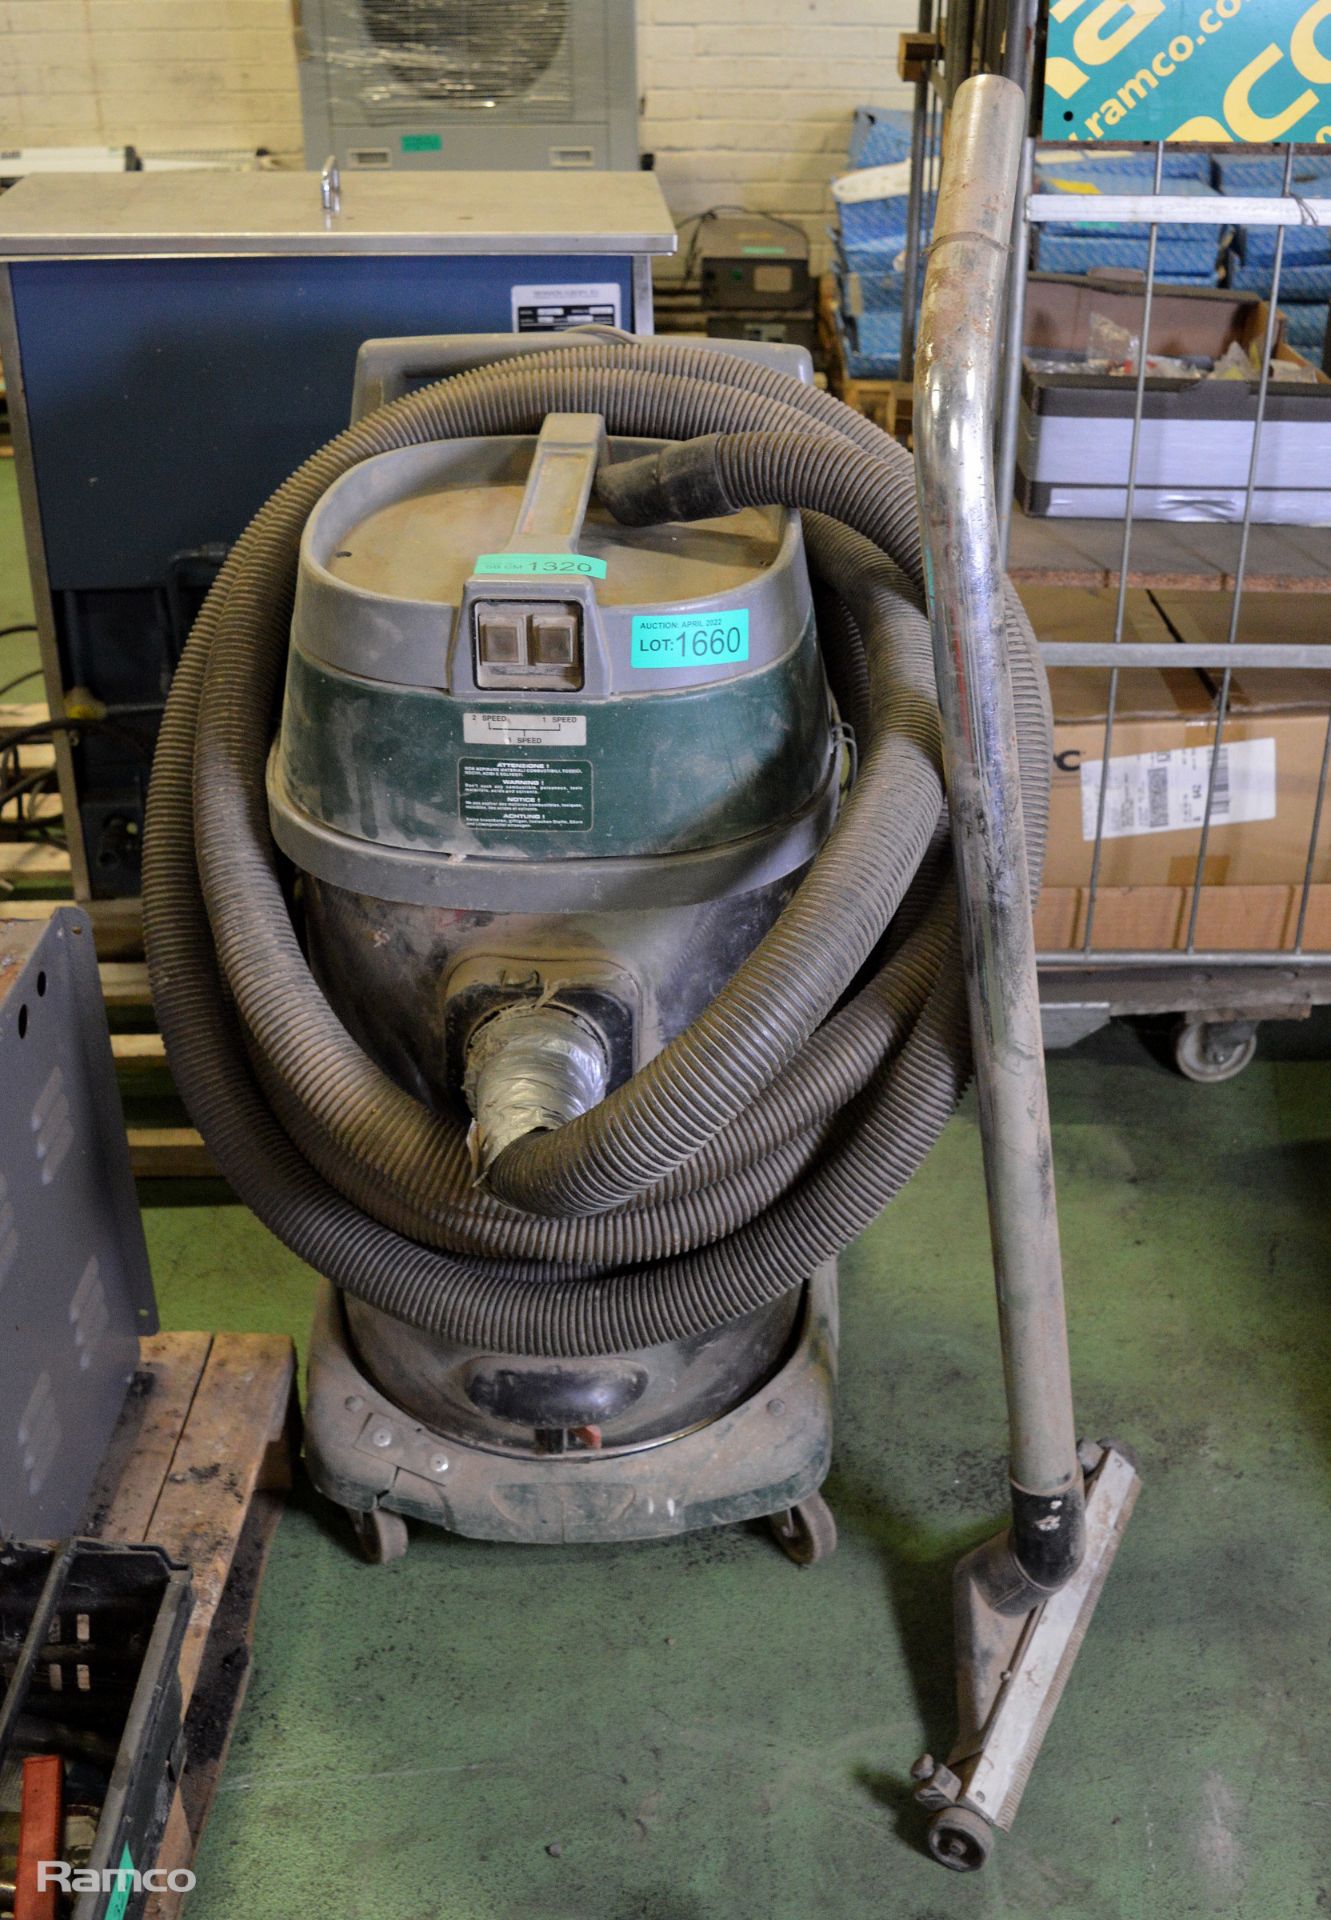 Heavy duty industrial vacuum cleaner